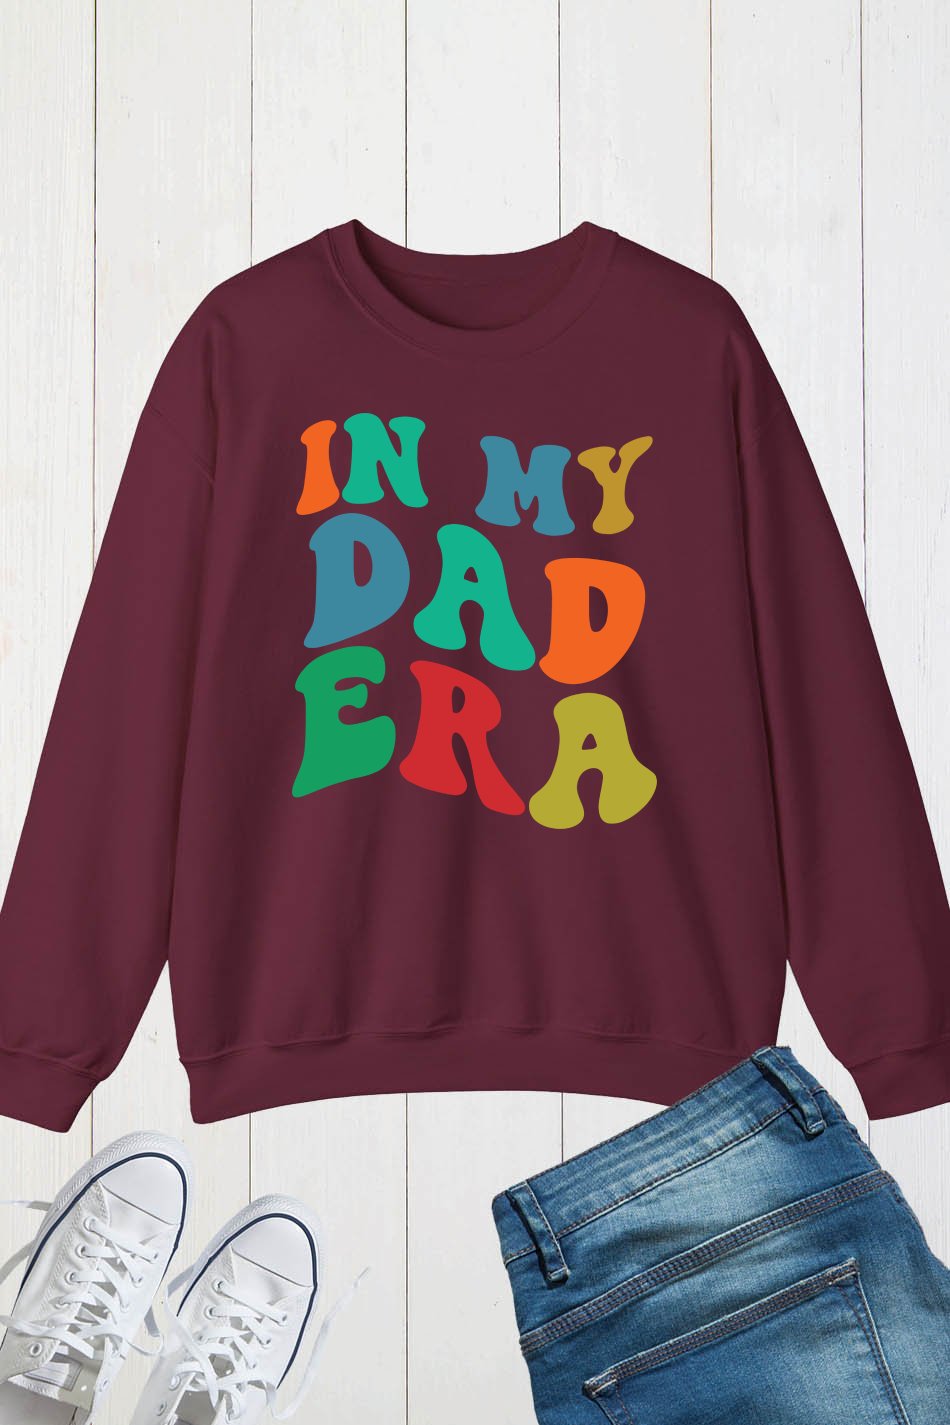 In My Dad Era Funny Father Sweatshirt